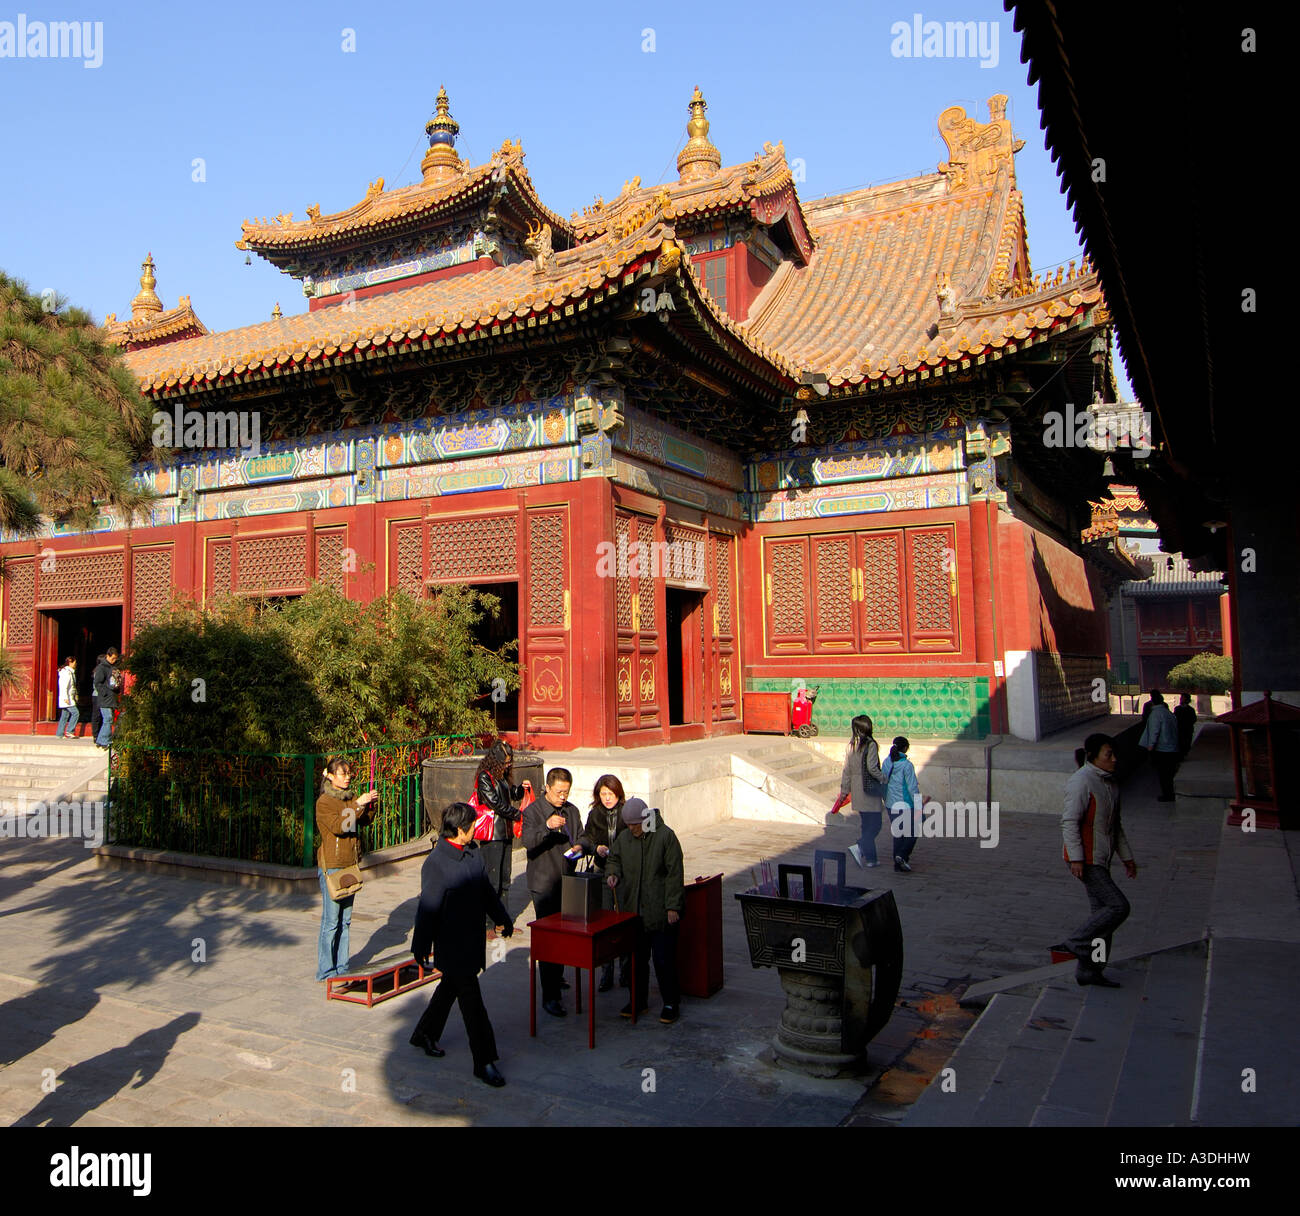 Tibetan Buddhist temple Yong He Gong, Beijing, China Stock Photo